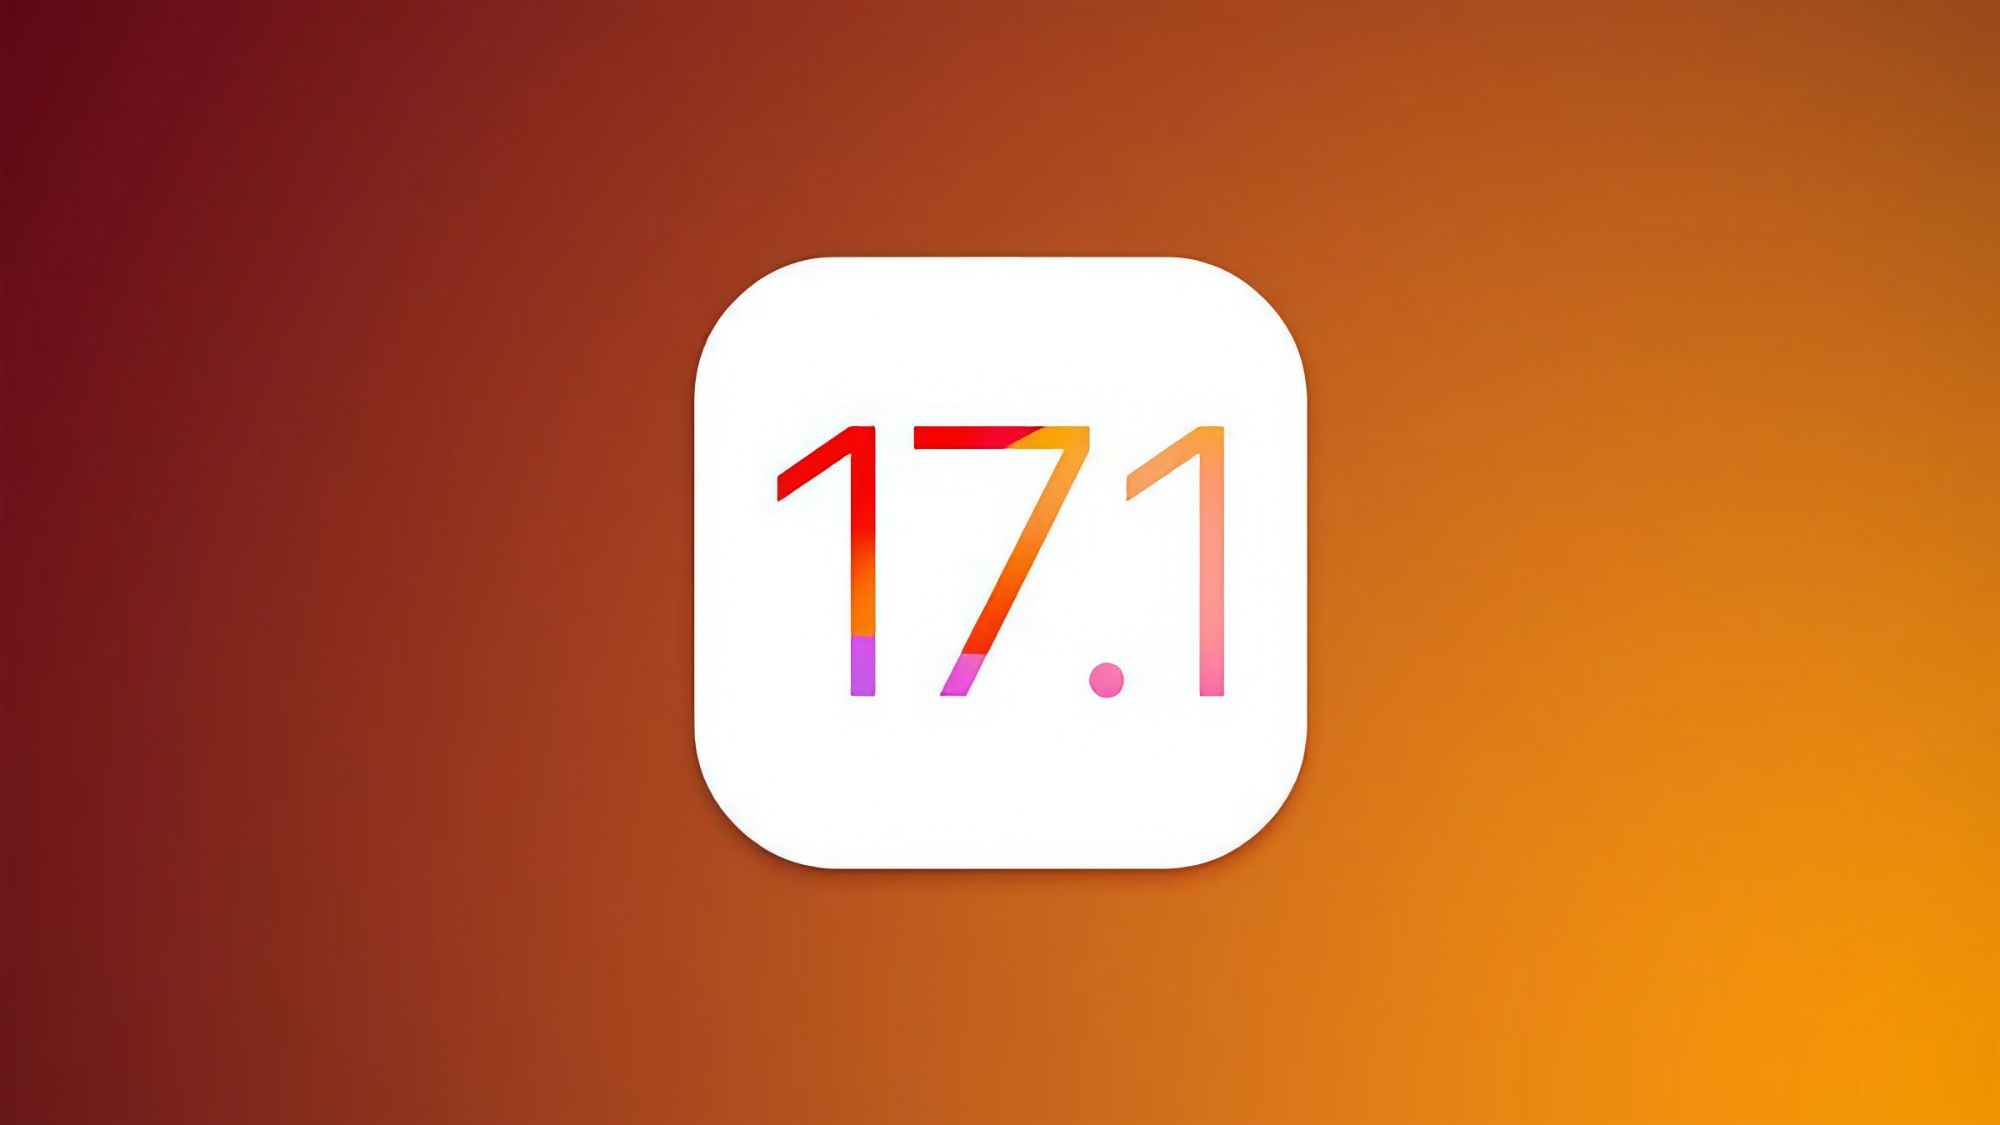 Apple випустила iOS 17.1 Beta 2: що нового